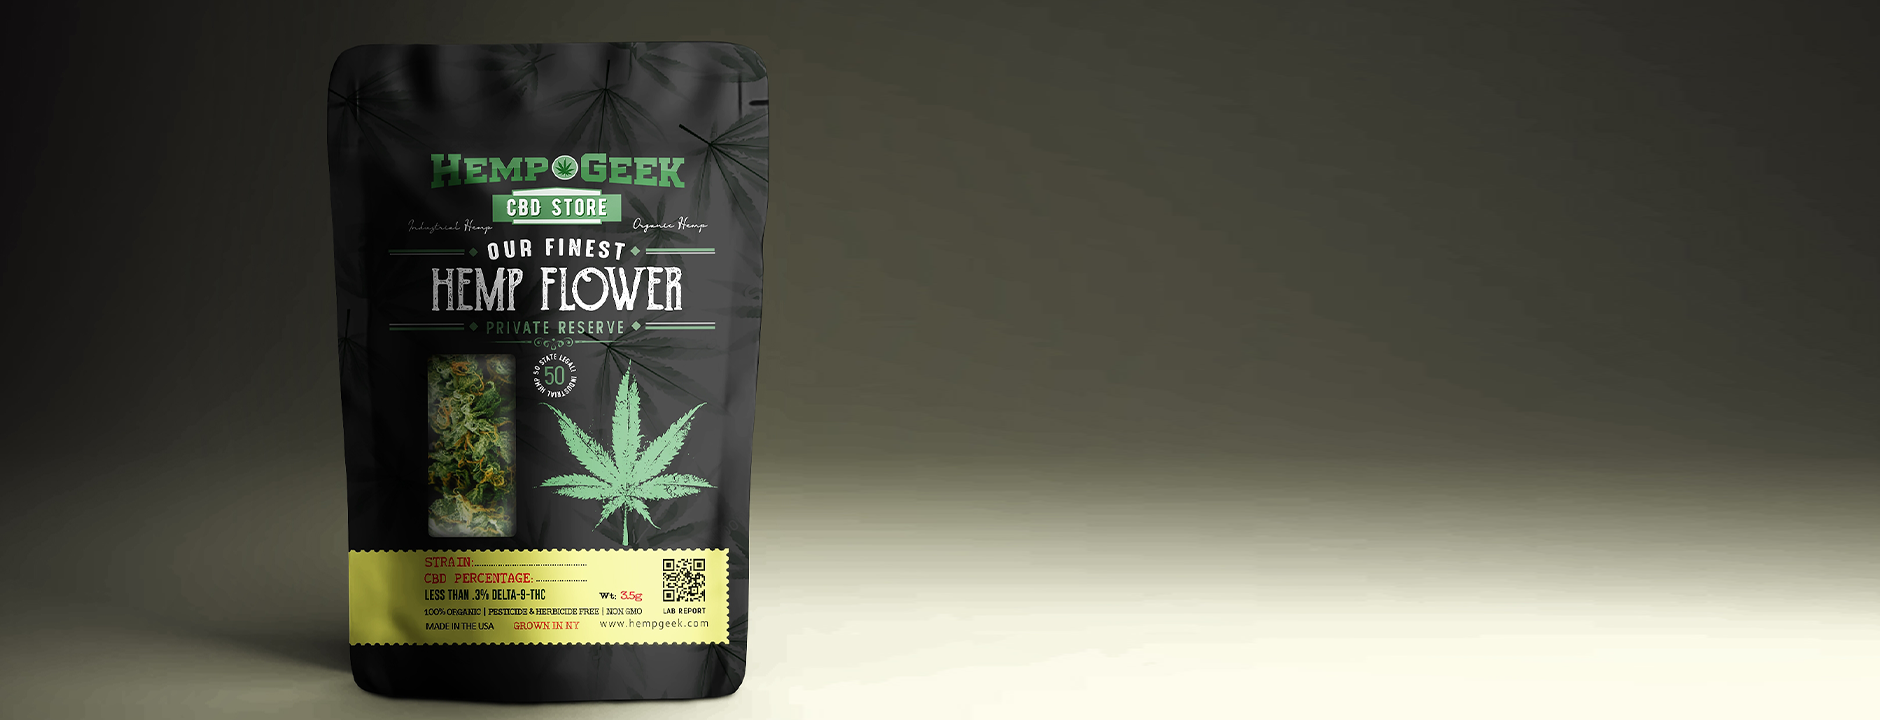 Hemp Geek Premium Organic CBD Hemp Flower Smokeable